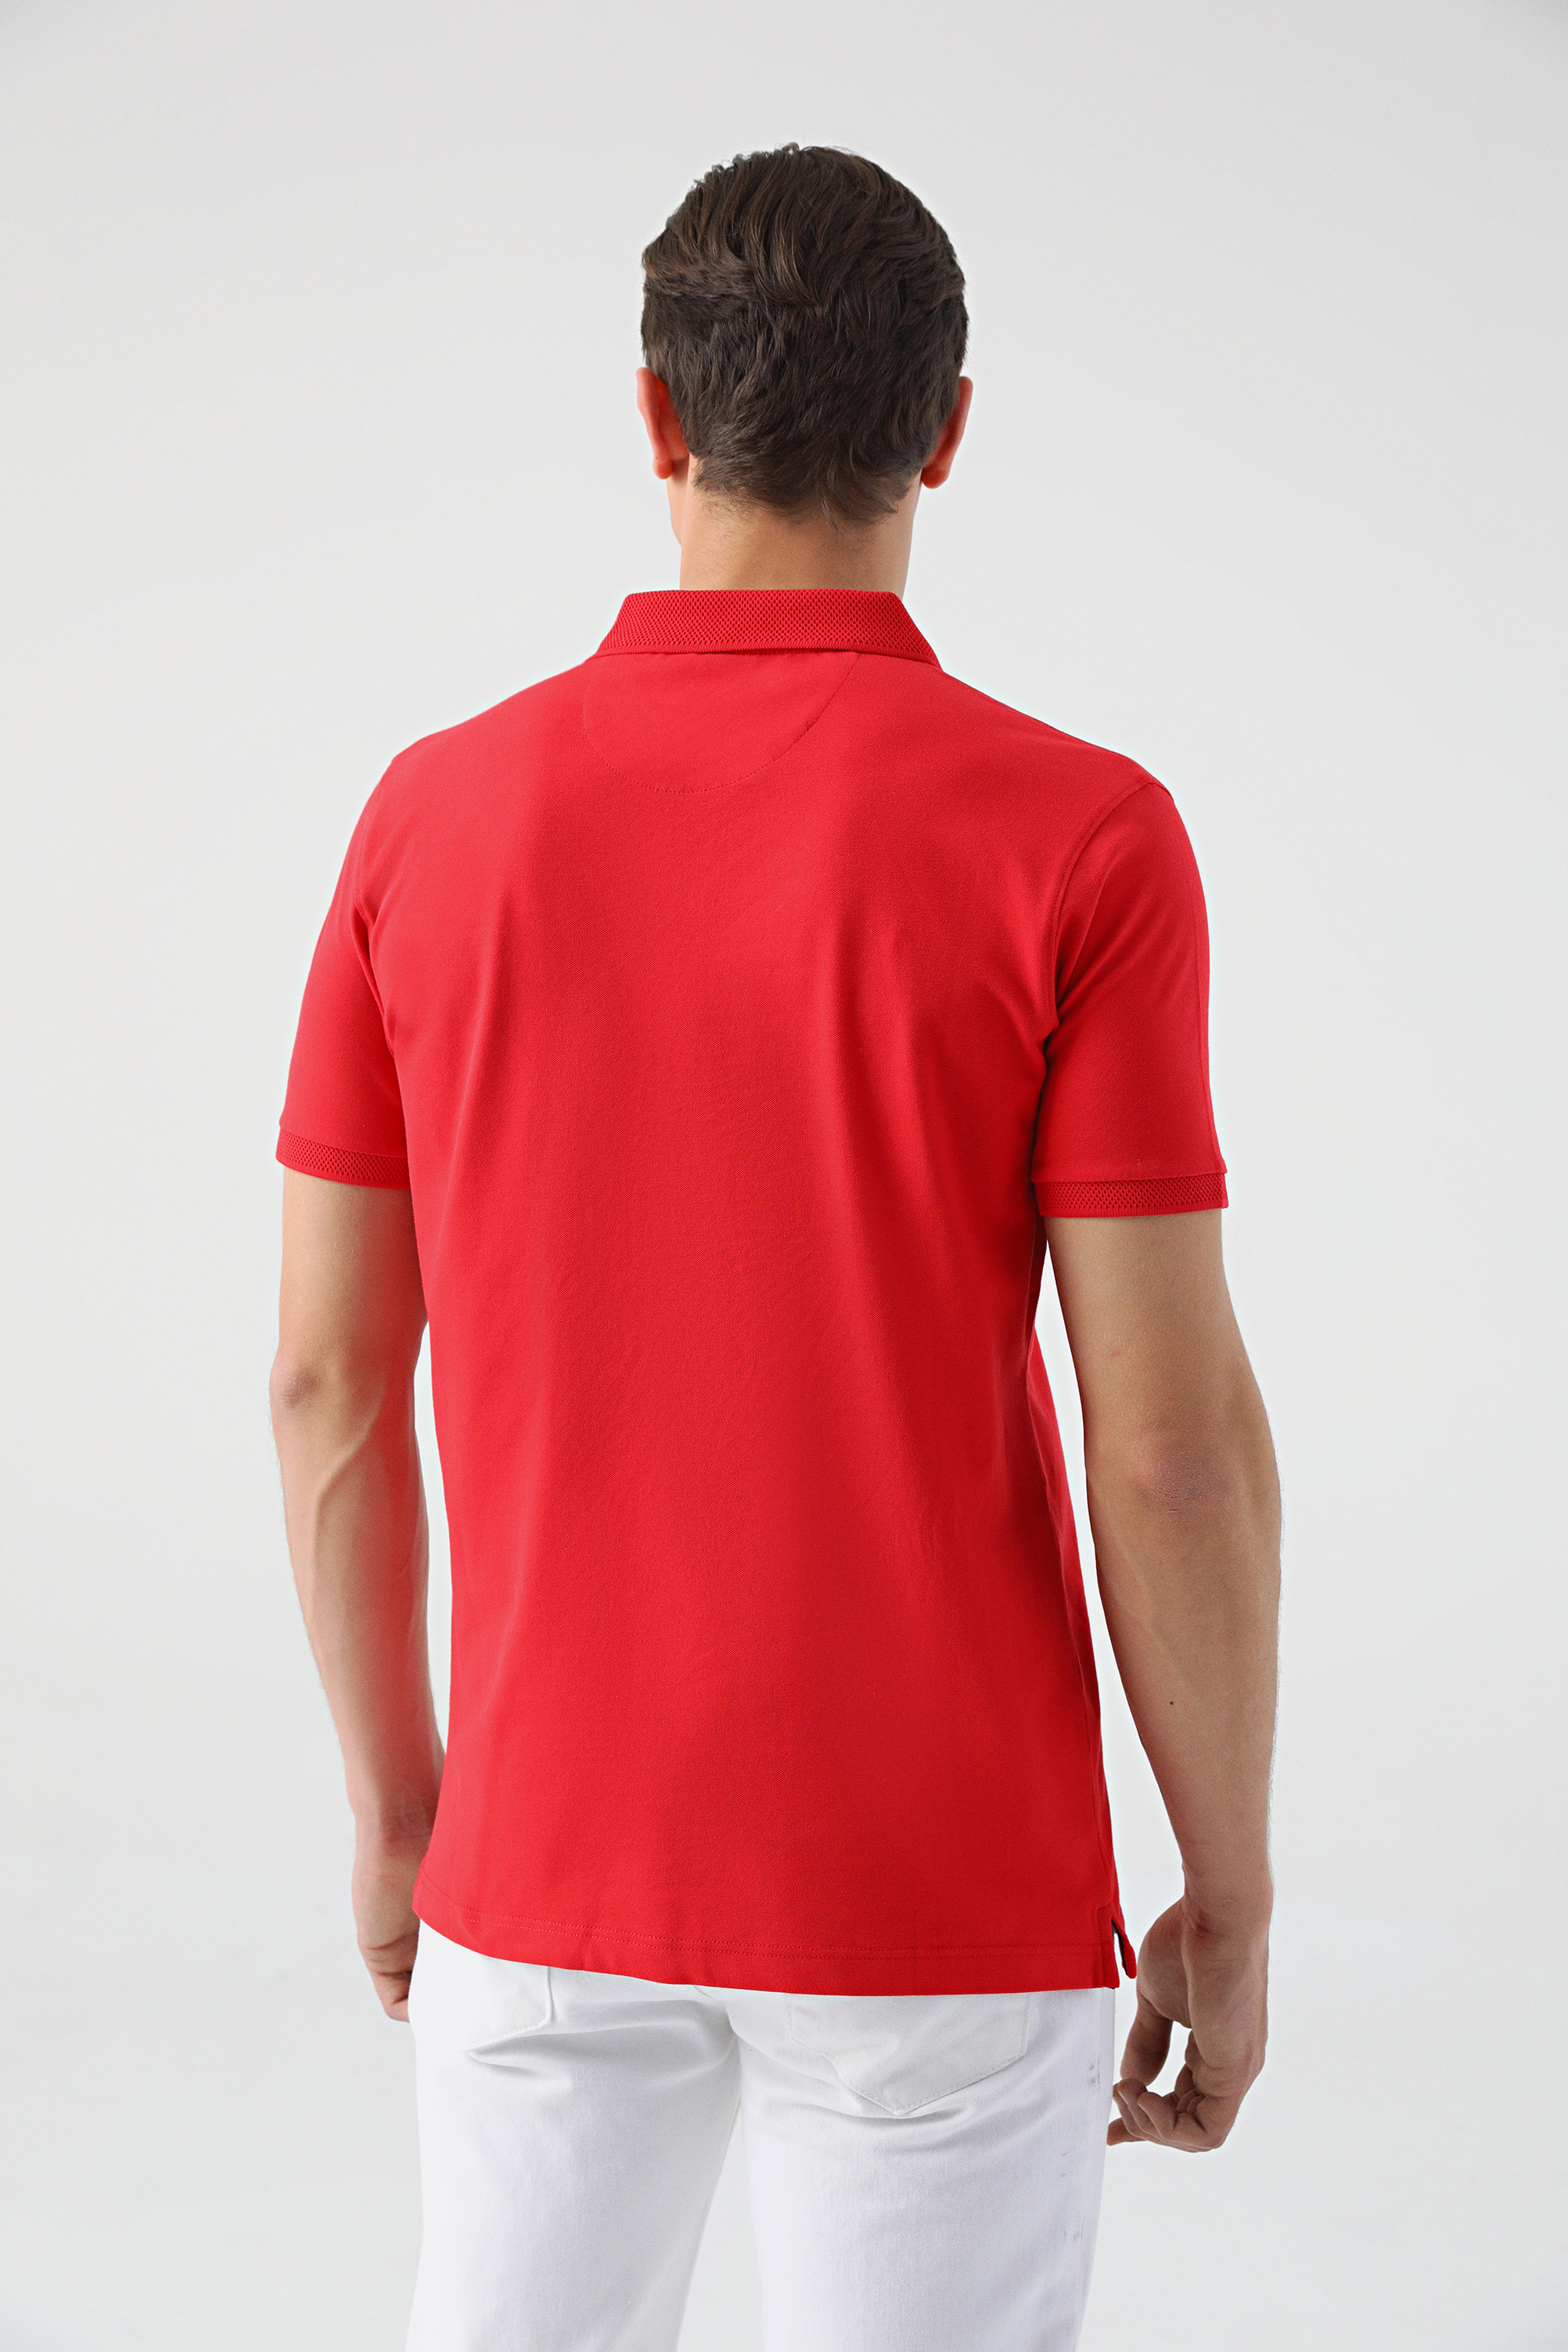 Damat Tween Tween Kırmızı Nakışlı %100 Pamuk T-Shirt. 4